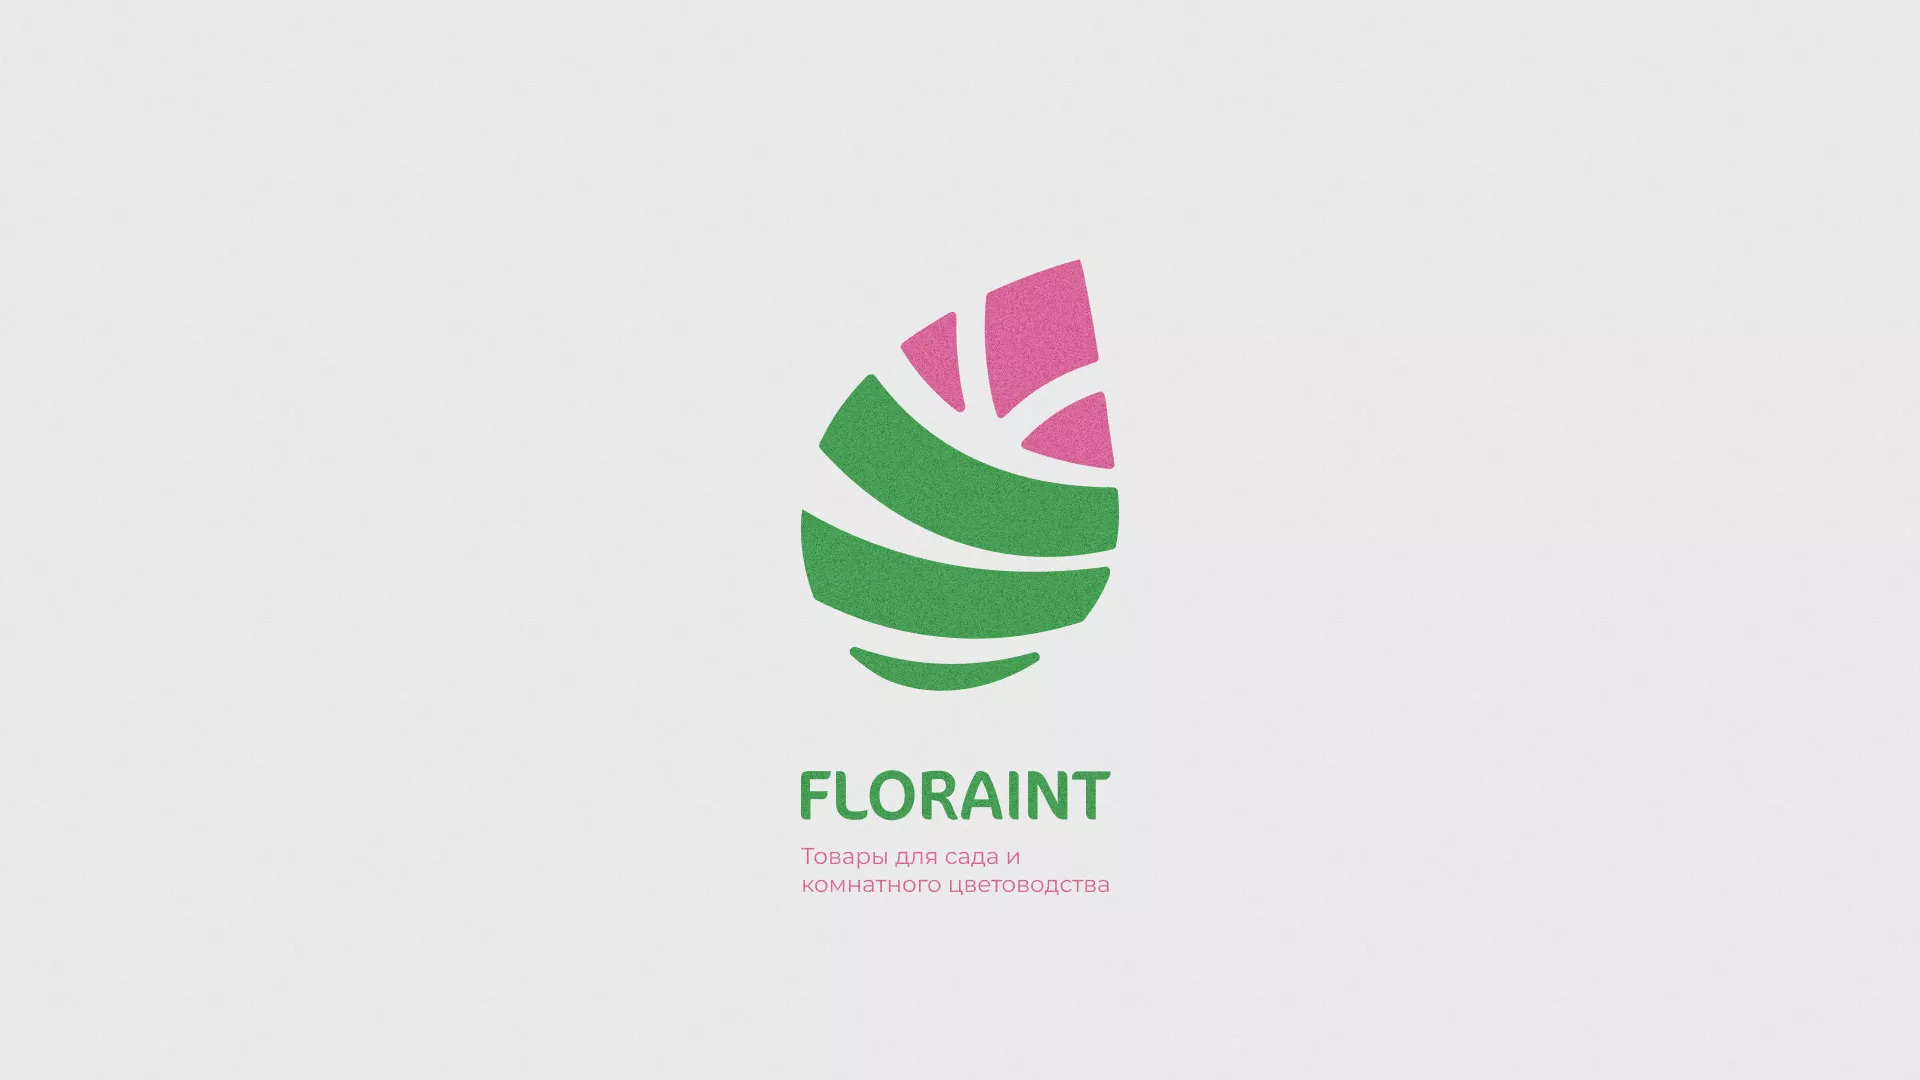 Разработка оформления профиля Instagram для магазина «Floraint» в Бокситогорске